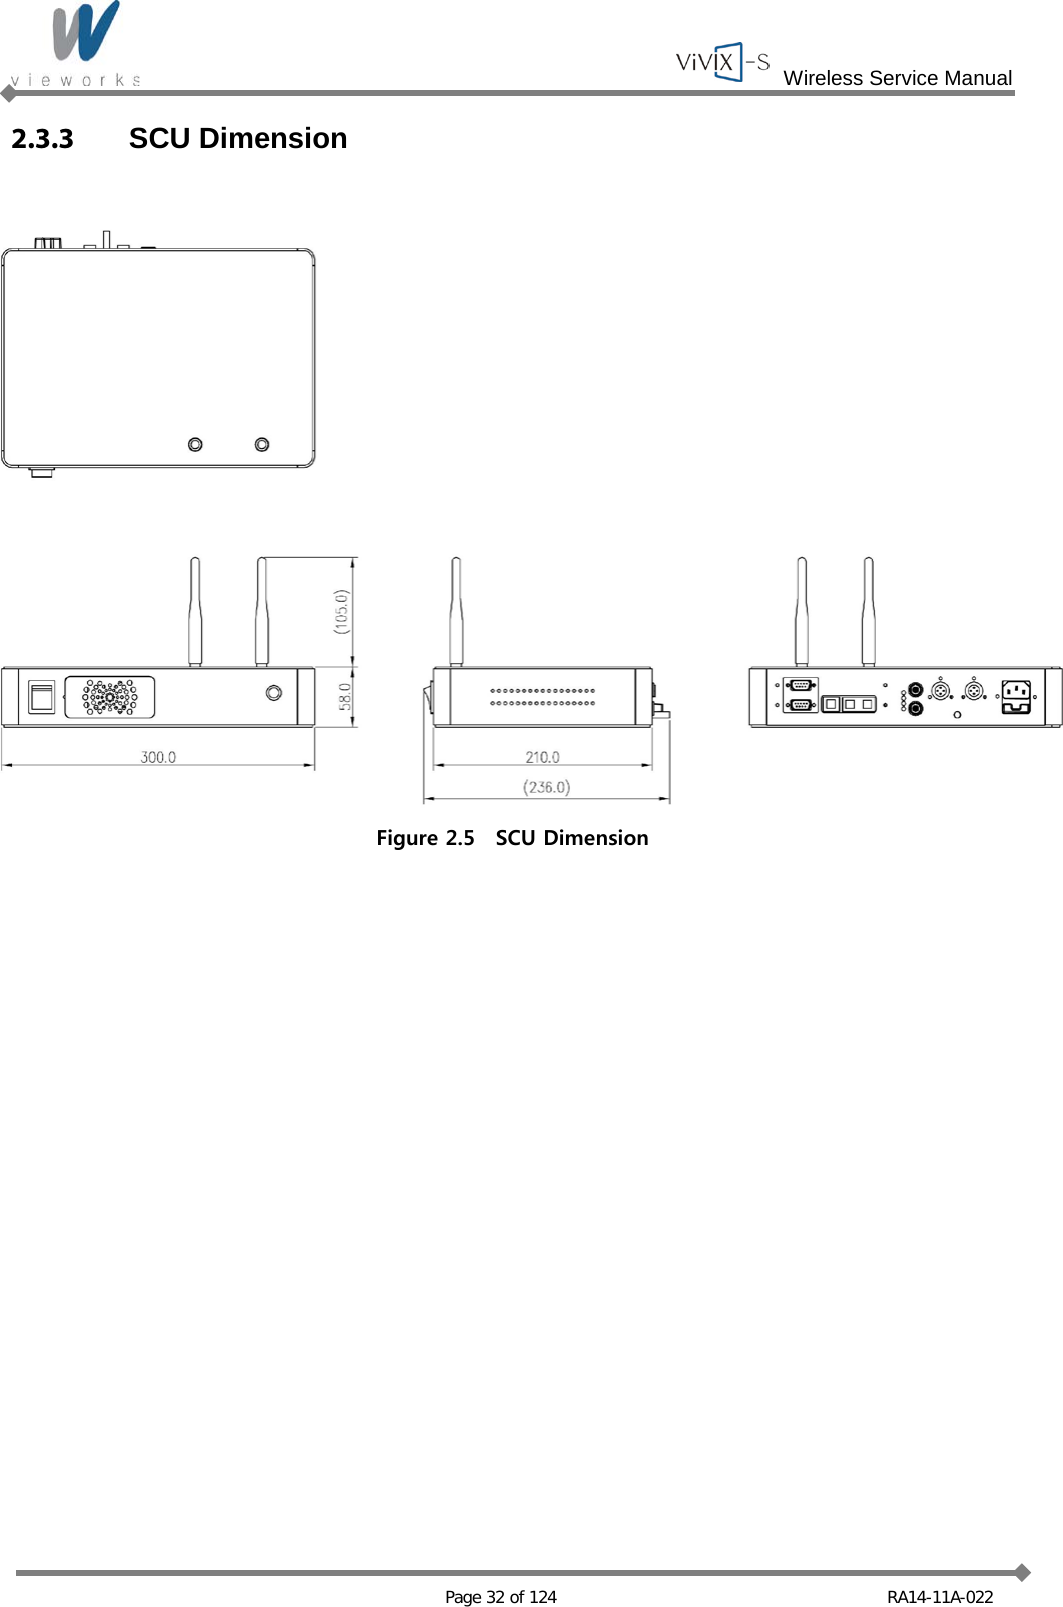  Wireless Service Manual   Page 32 of 124 RA14-11A-022 2.3.3 SCU Dimension  Figure 2.5  SCU Dimension  